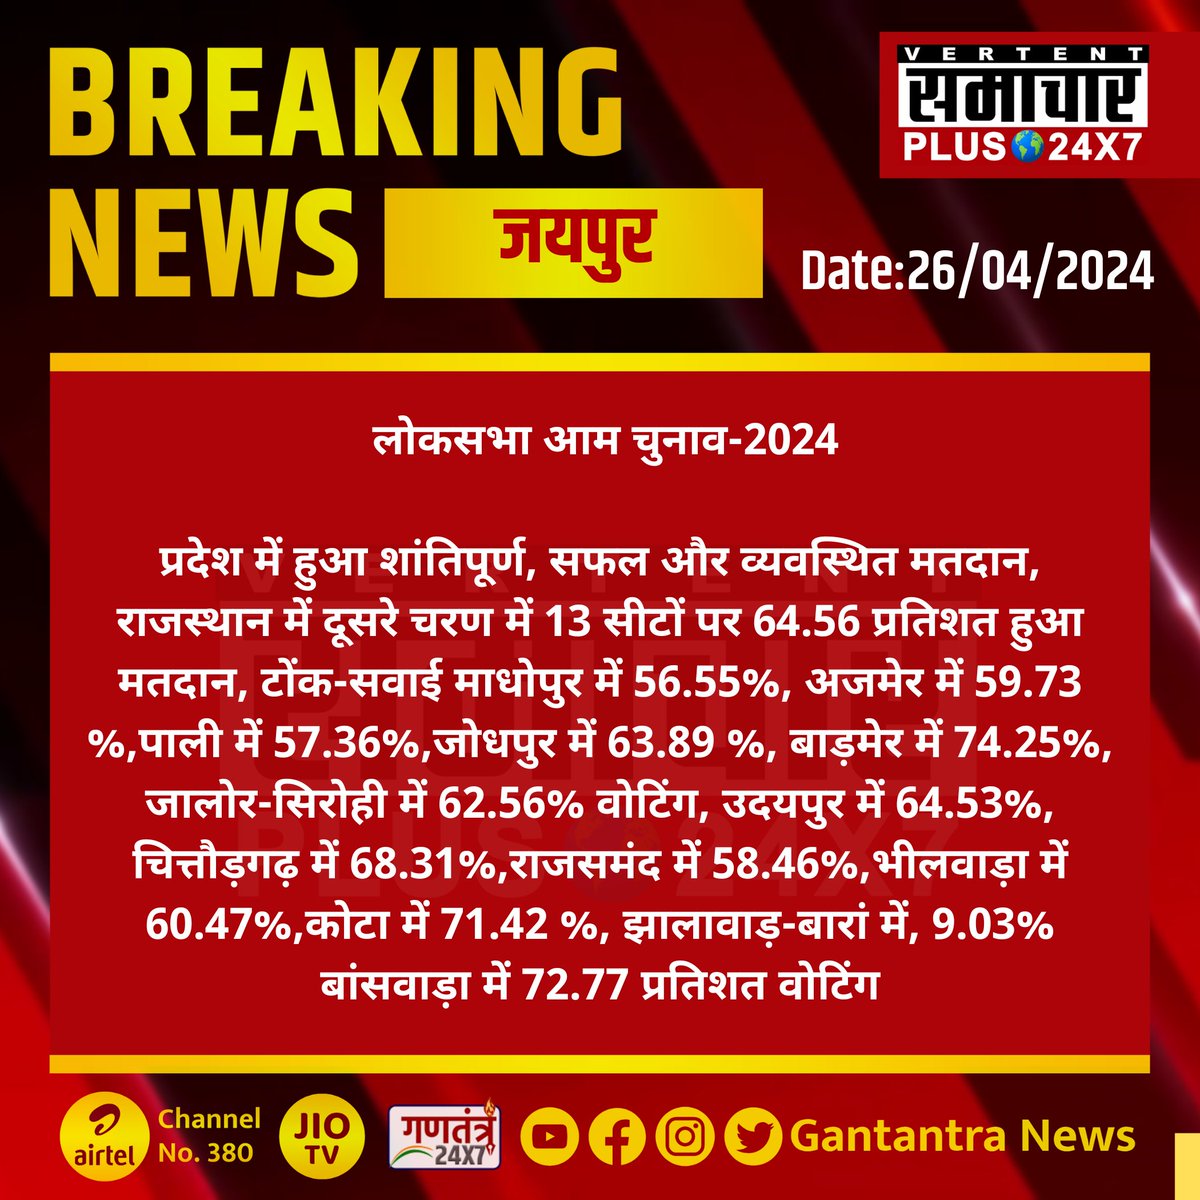 #जयपुर : लोकसभा आम चुनाव-2024

प्रदेश में हुआ शांतिपूर्ण, सफल और व्यवस्थित मतदान...

#jaipur #RajasthanNews #SamacharPlus #BreakingNews #LokSabhaElections2024 #Mahabharat2024 #ElectionWithSamacharPlus